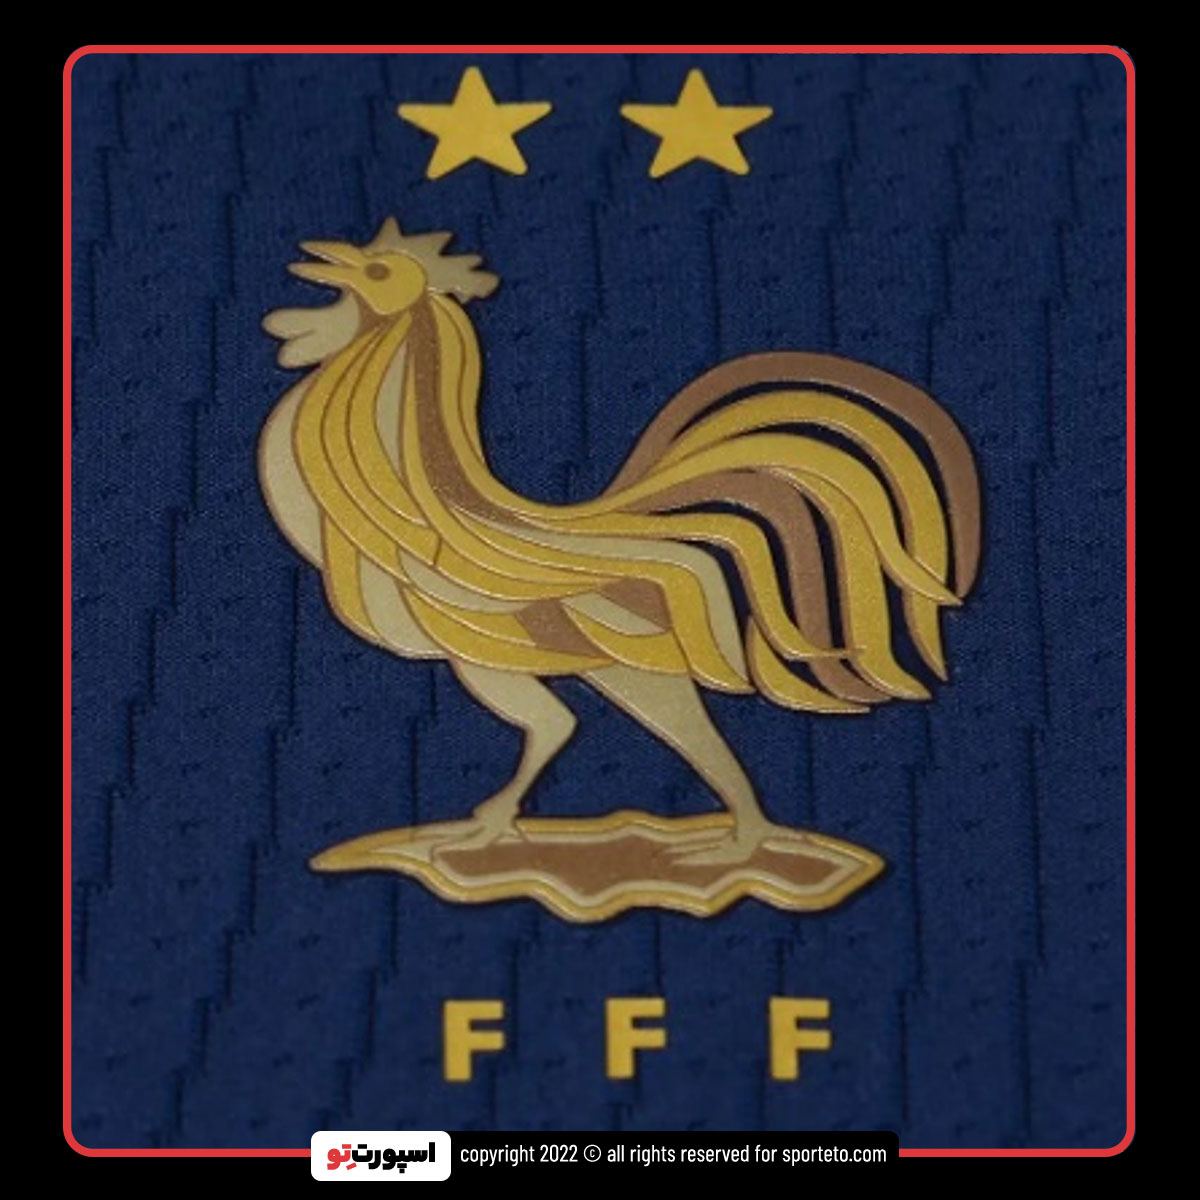 لوگوی لباس جام جهانی تیم ملی فرانسه 